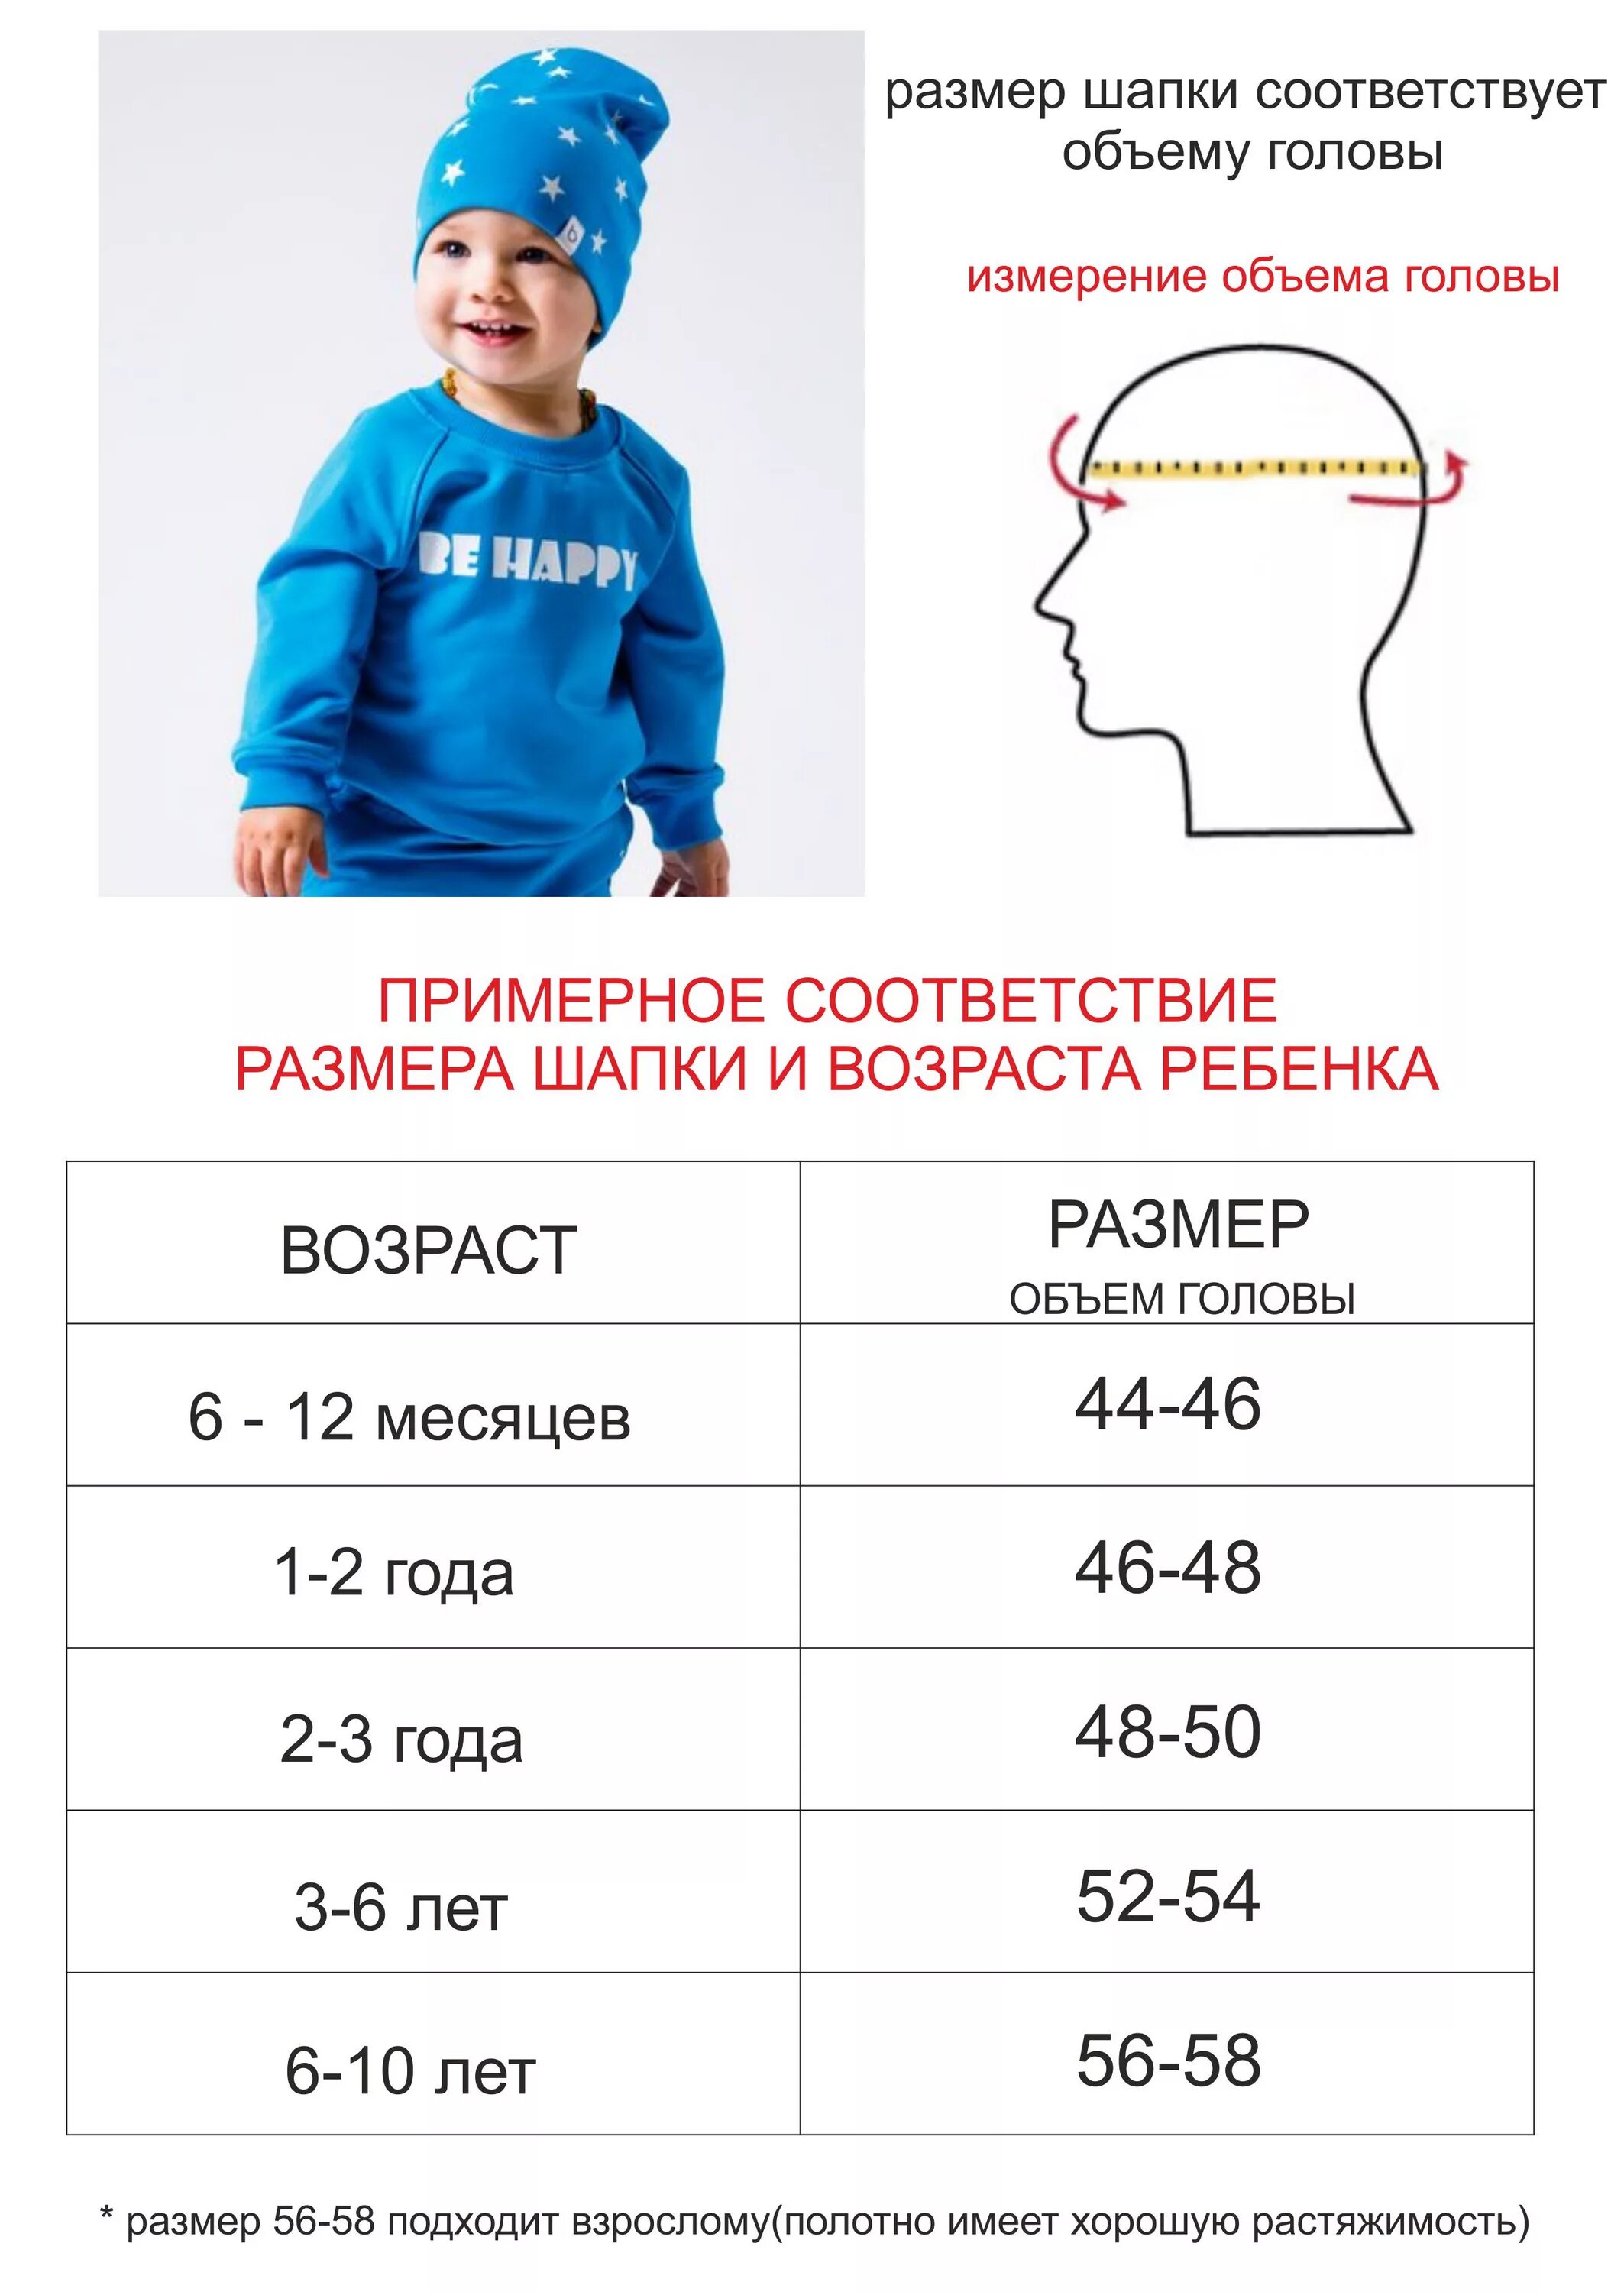 Размер головы в 2 4. Размер головного убора обхват головы 56. Размер шапки на 3 года. Размер шапки ребенка 4 года размер. Размер шапки на ребенка 3 года.